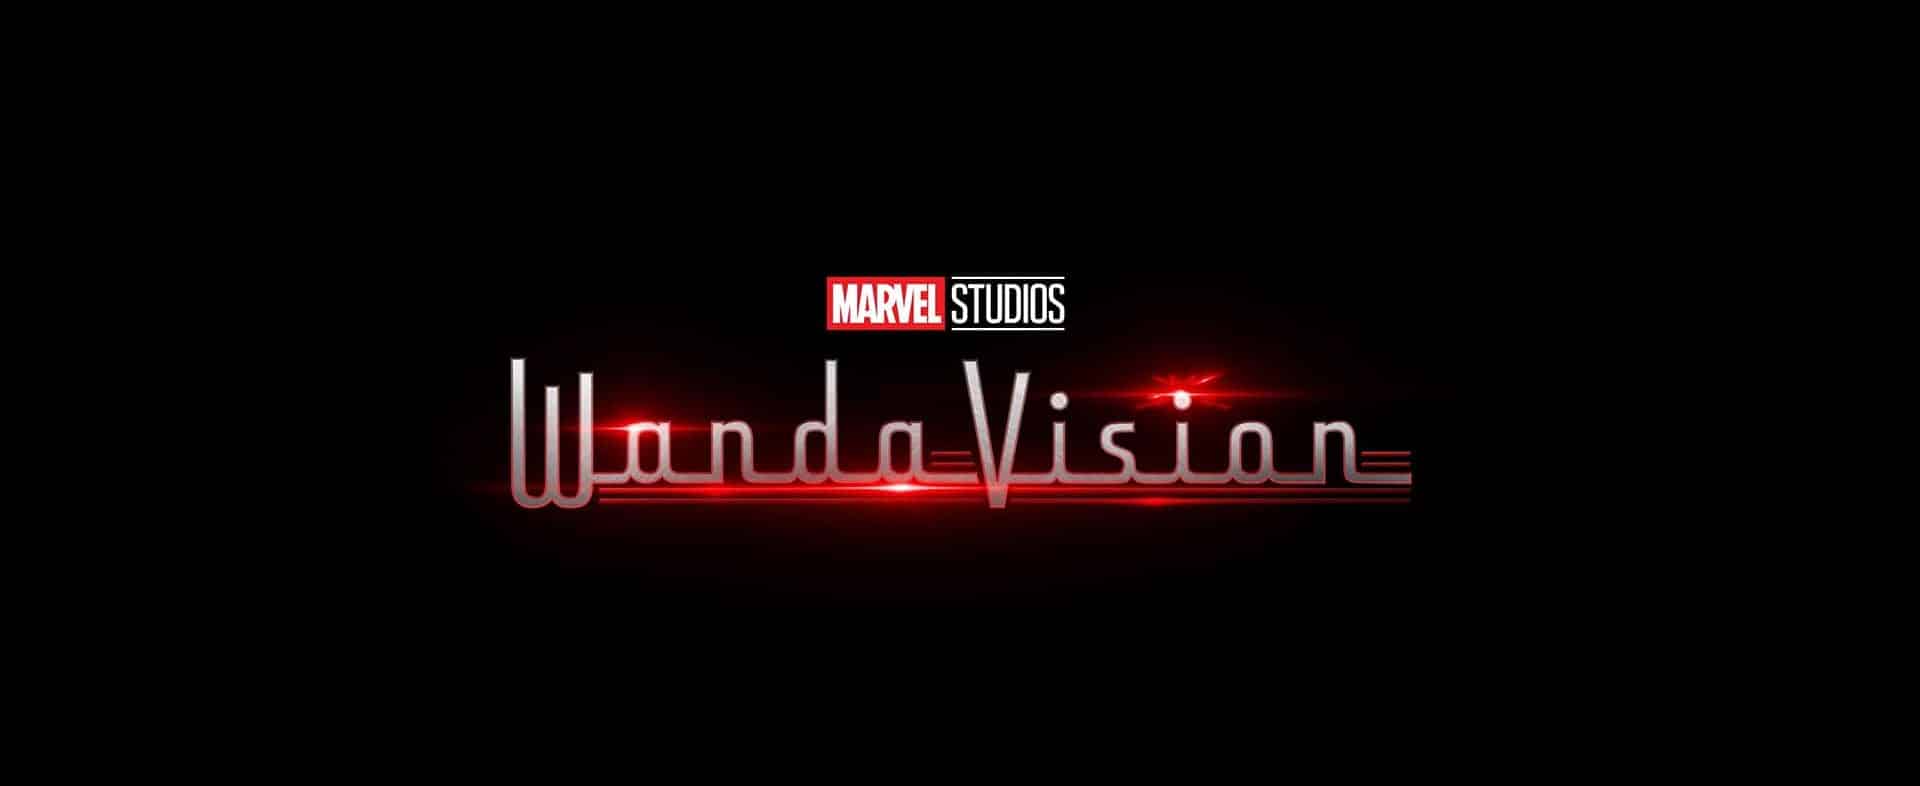 WandaVision: la serie Marvel uscirà nel 2020 su Disney+